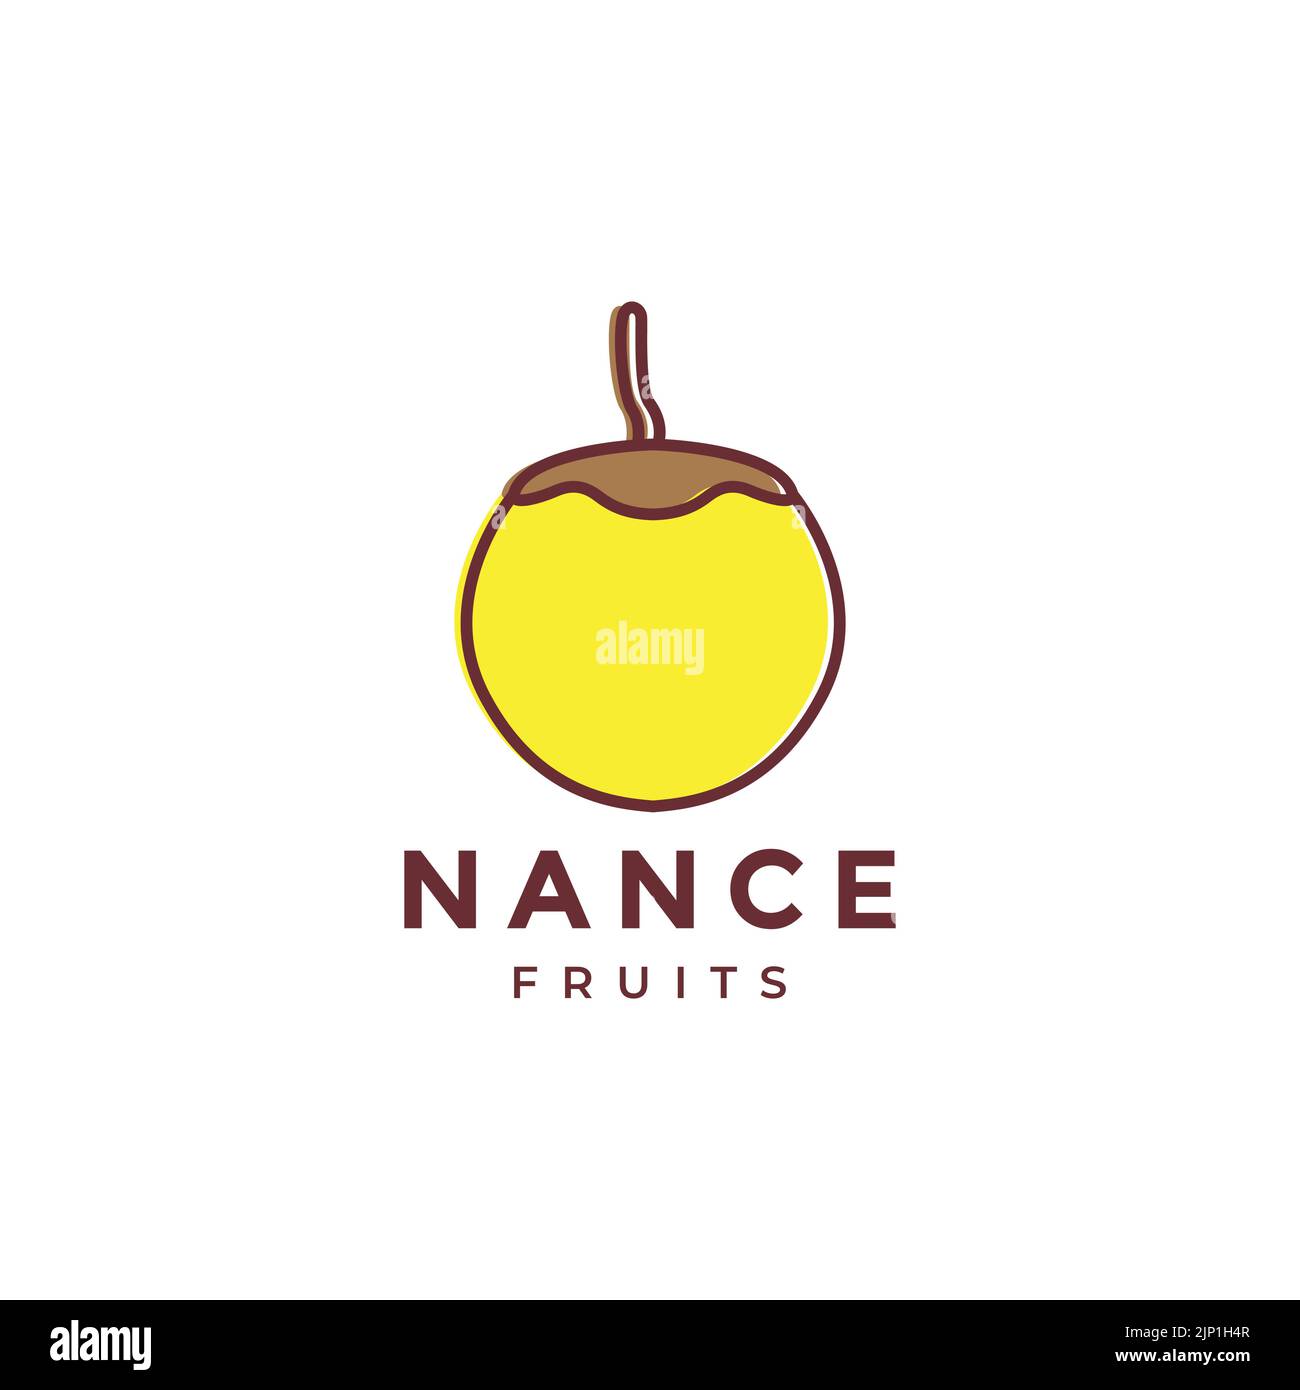 nance fruit abstract logo design Stock Vector